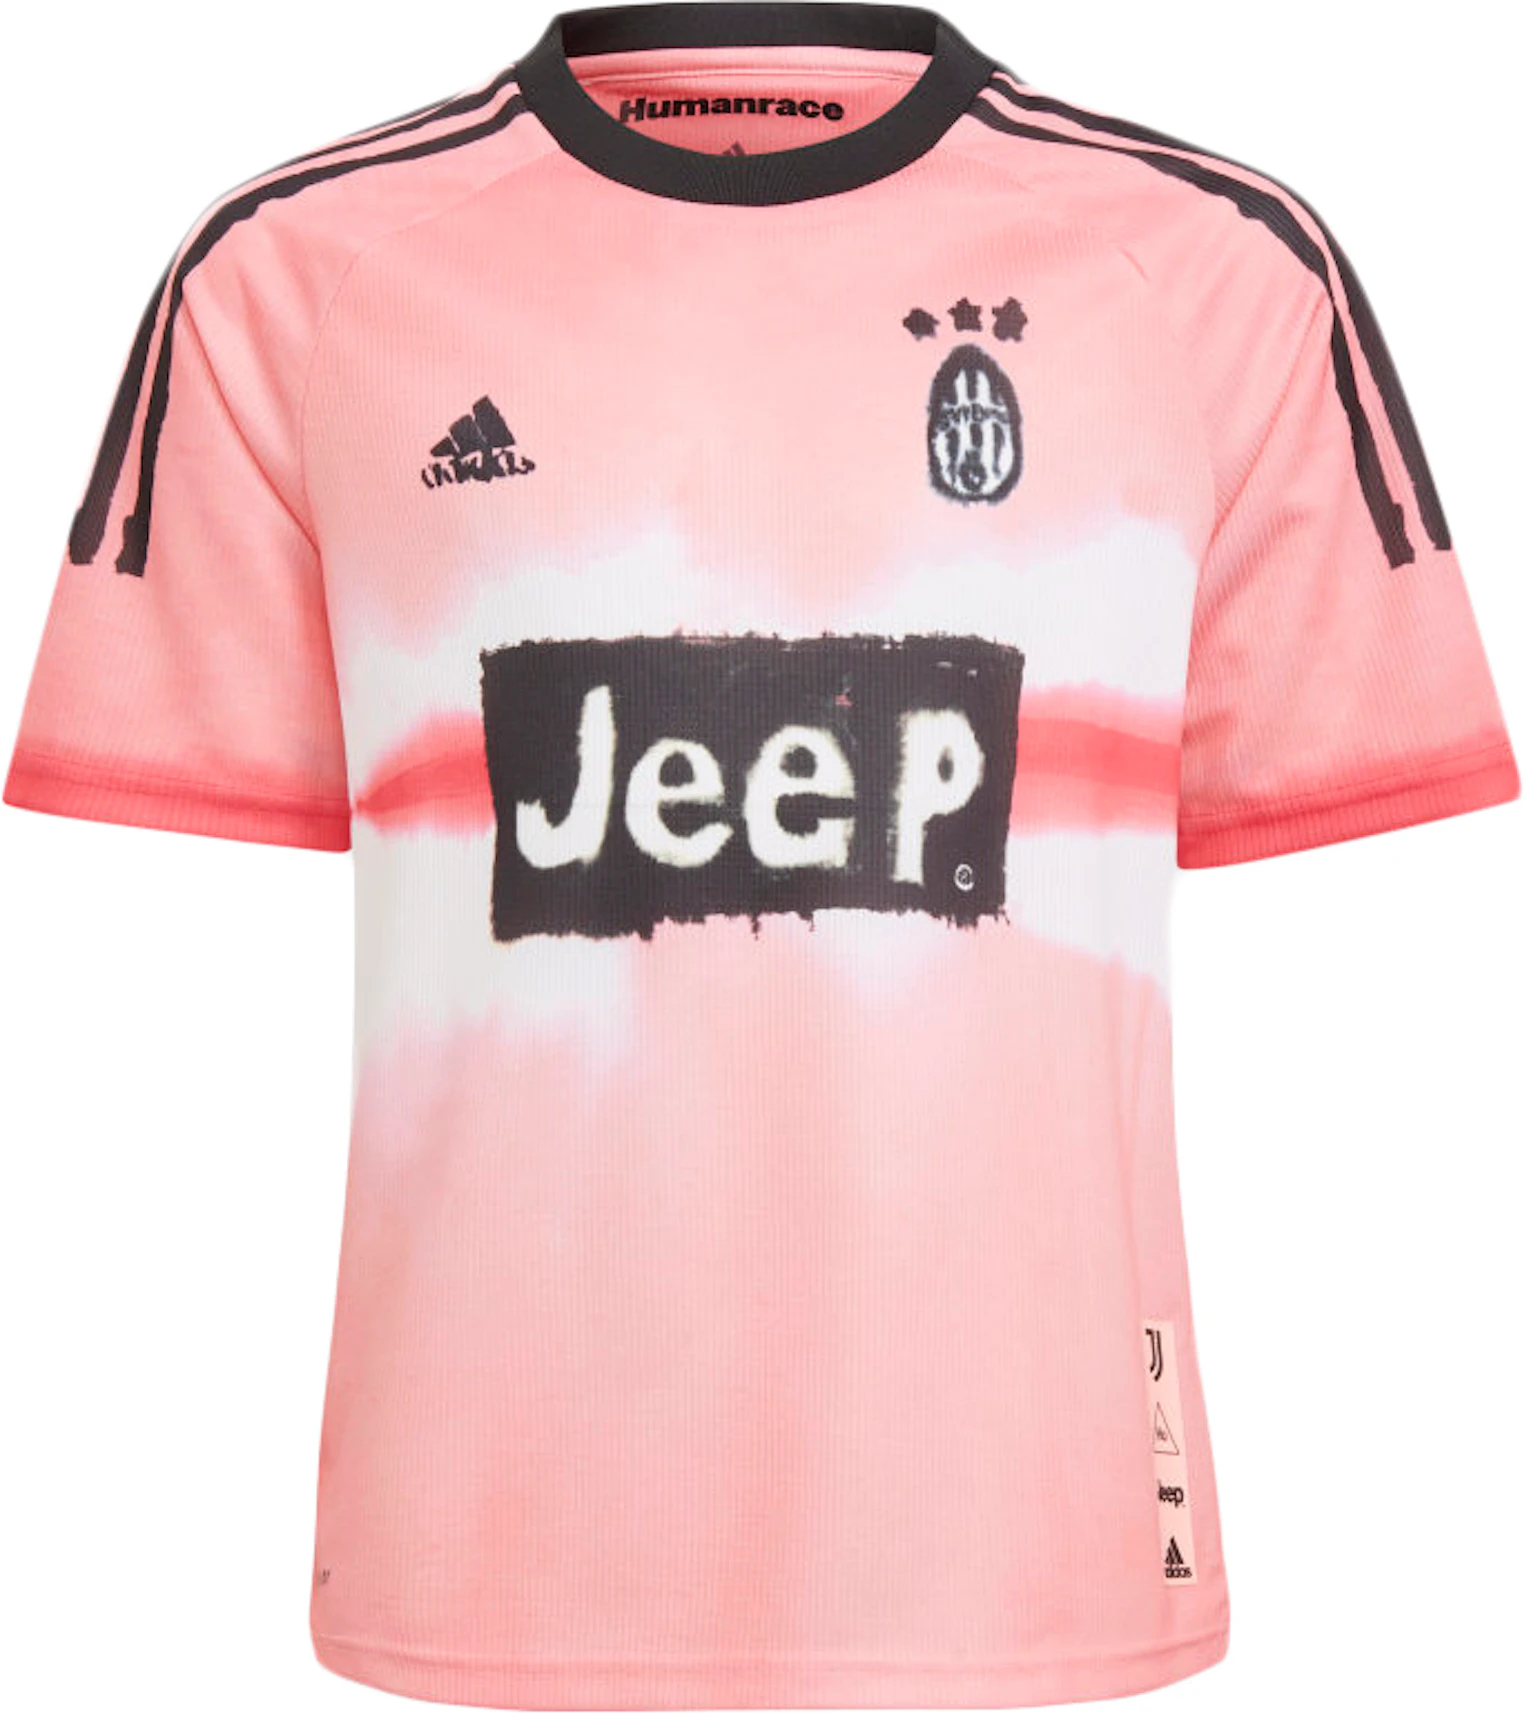 Ruidoso nostalgia Respetuoso adidas Juventus Human Race Kids Jersey Glow Pink/Black - FW20 - ES